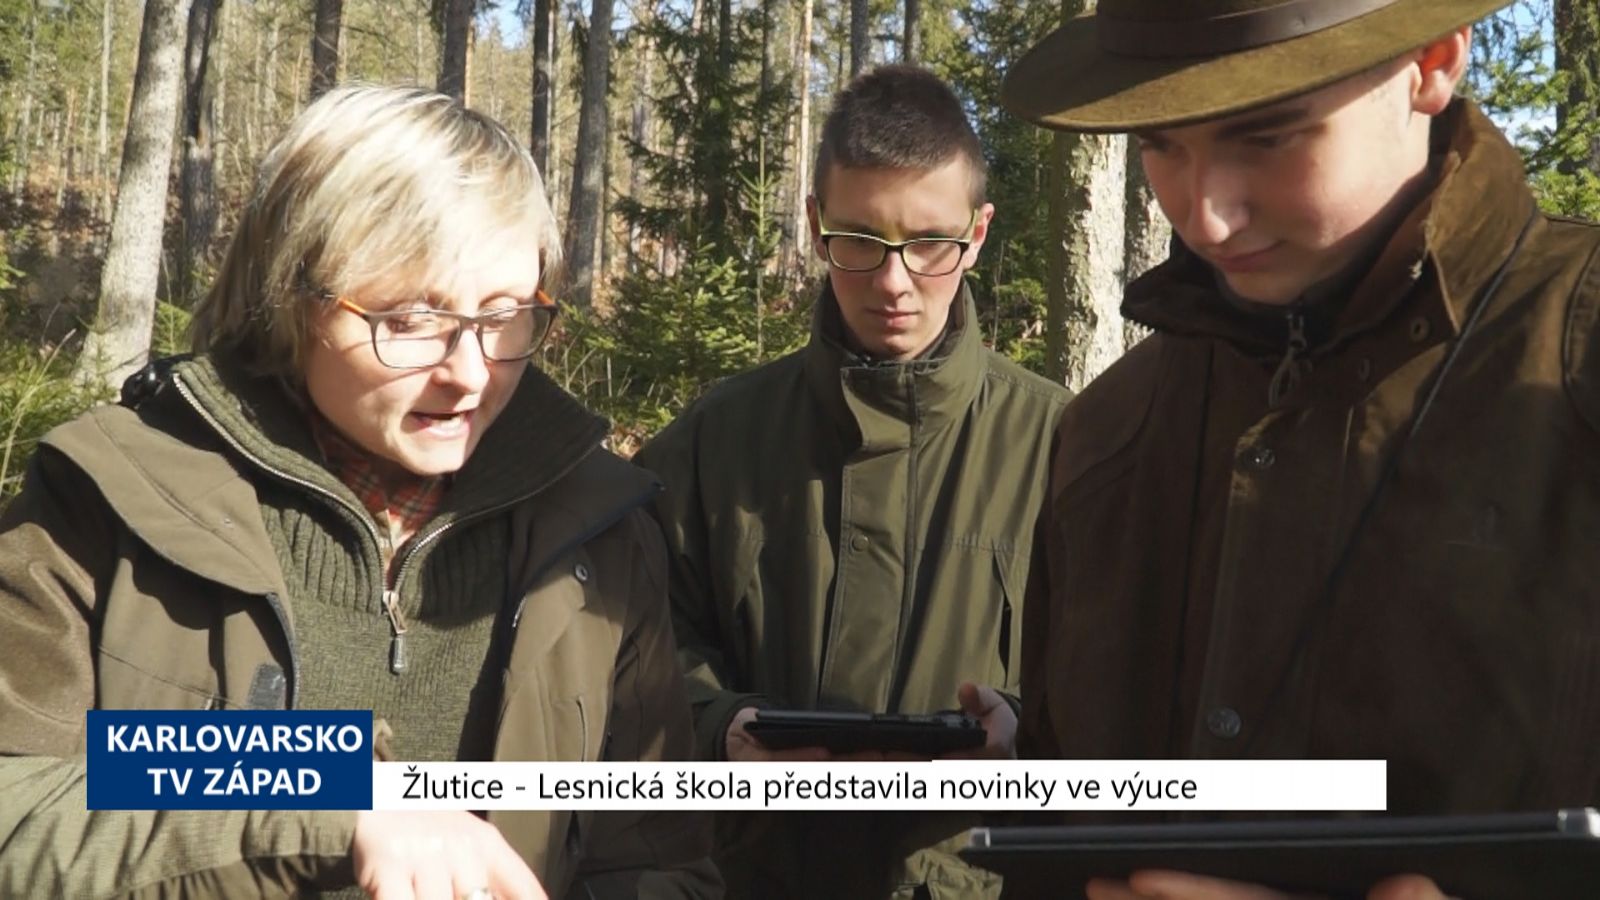 Žlutice: Lesnická škola představila novinky ve výuce (TV Západ)